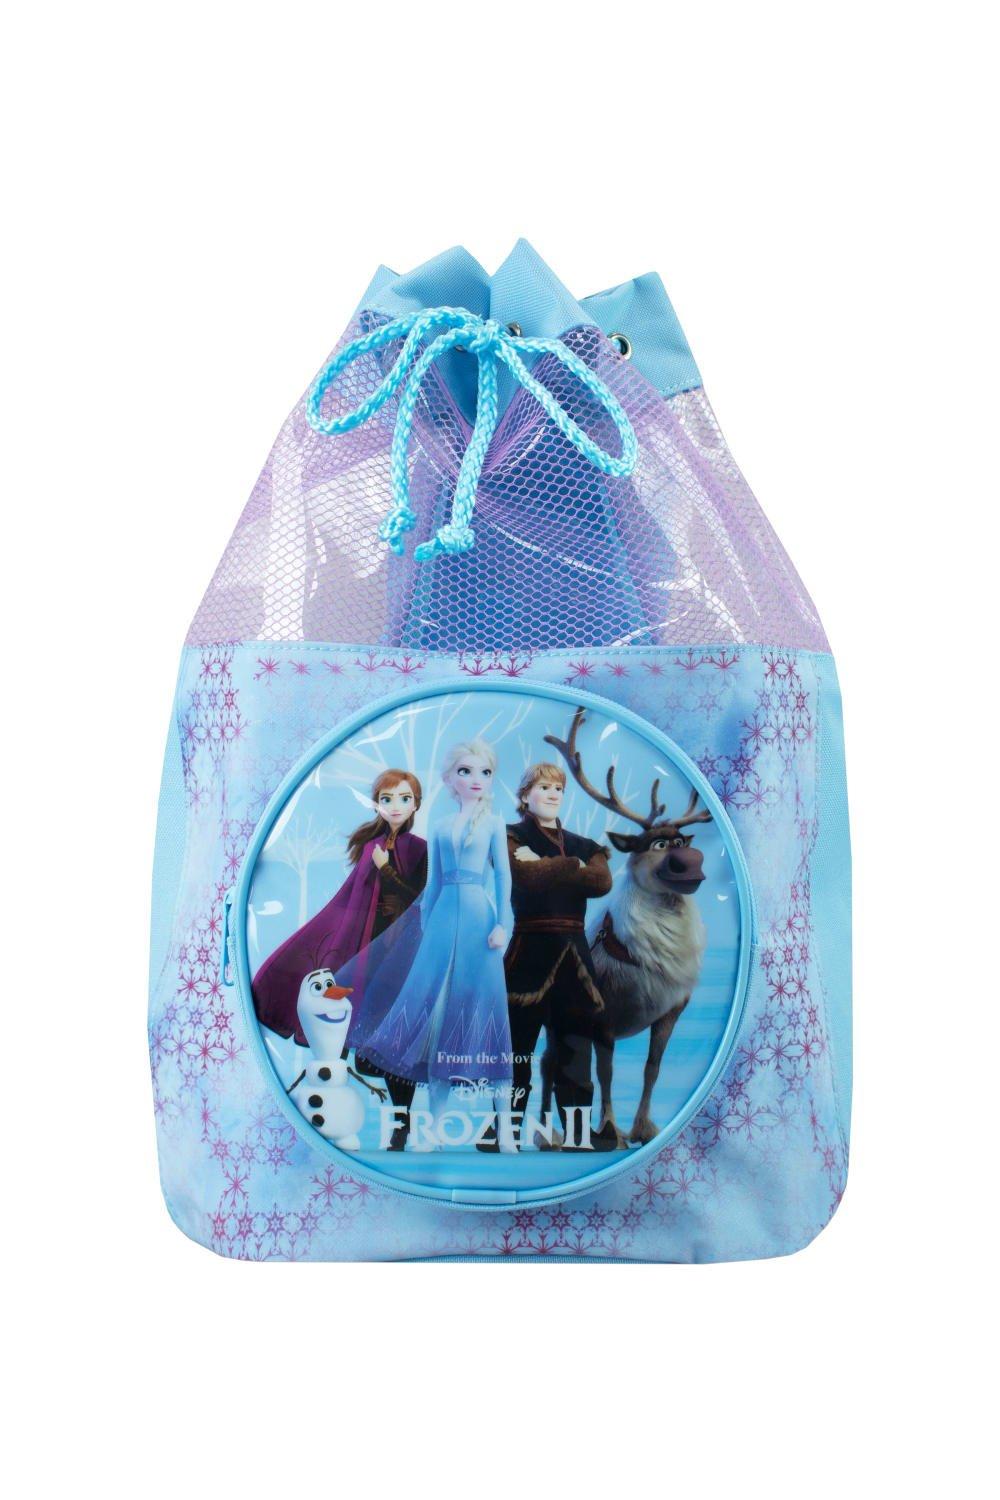 коллекционная игрушка prosto toys детализированная фигурка королева эльза из мультфильма холодное сердце disney Замороженная сумка для плавания Disney, синий